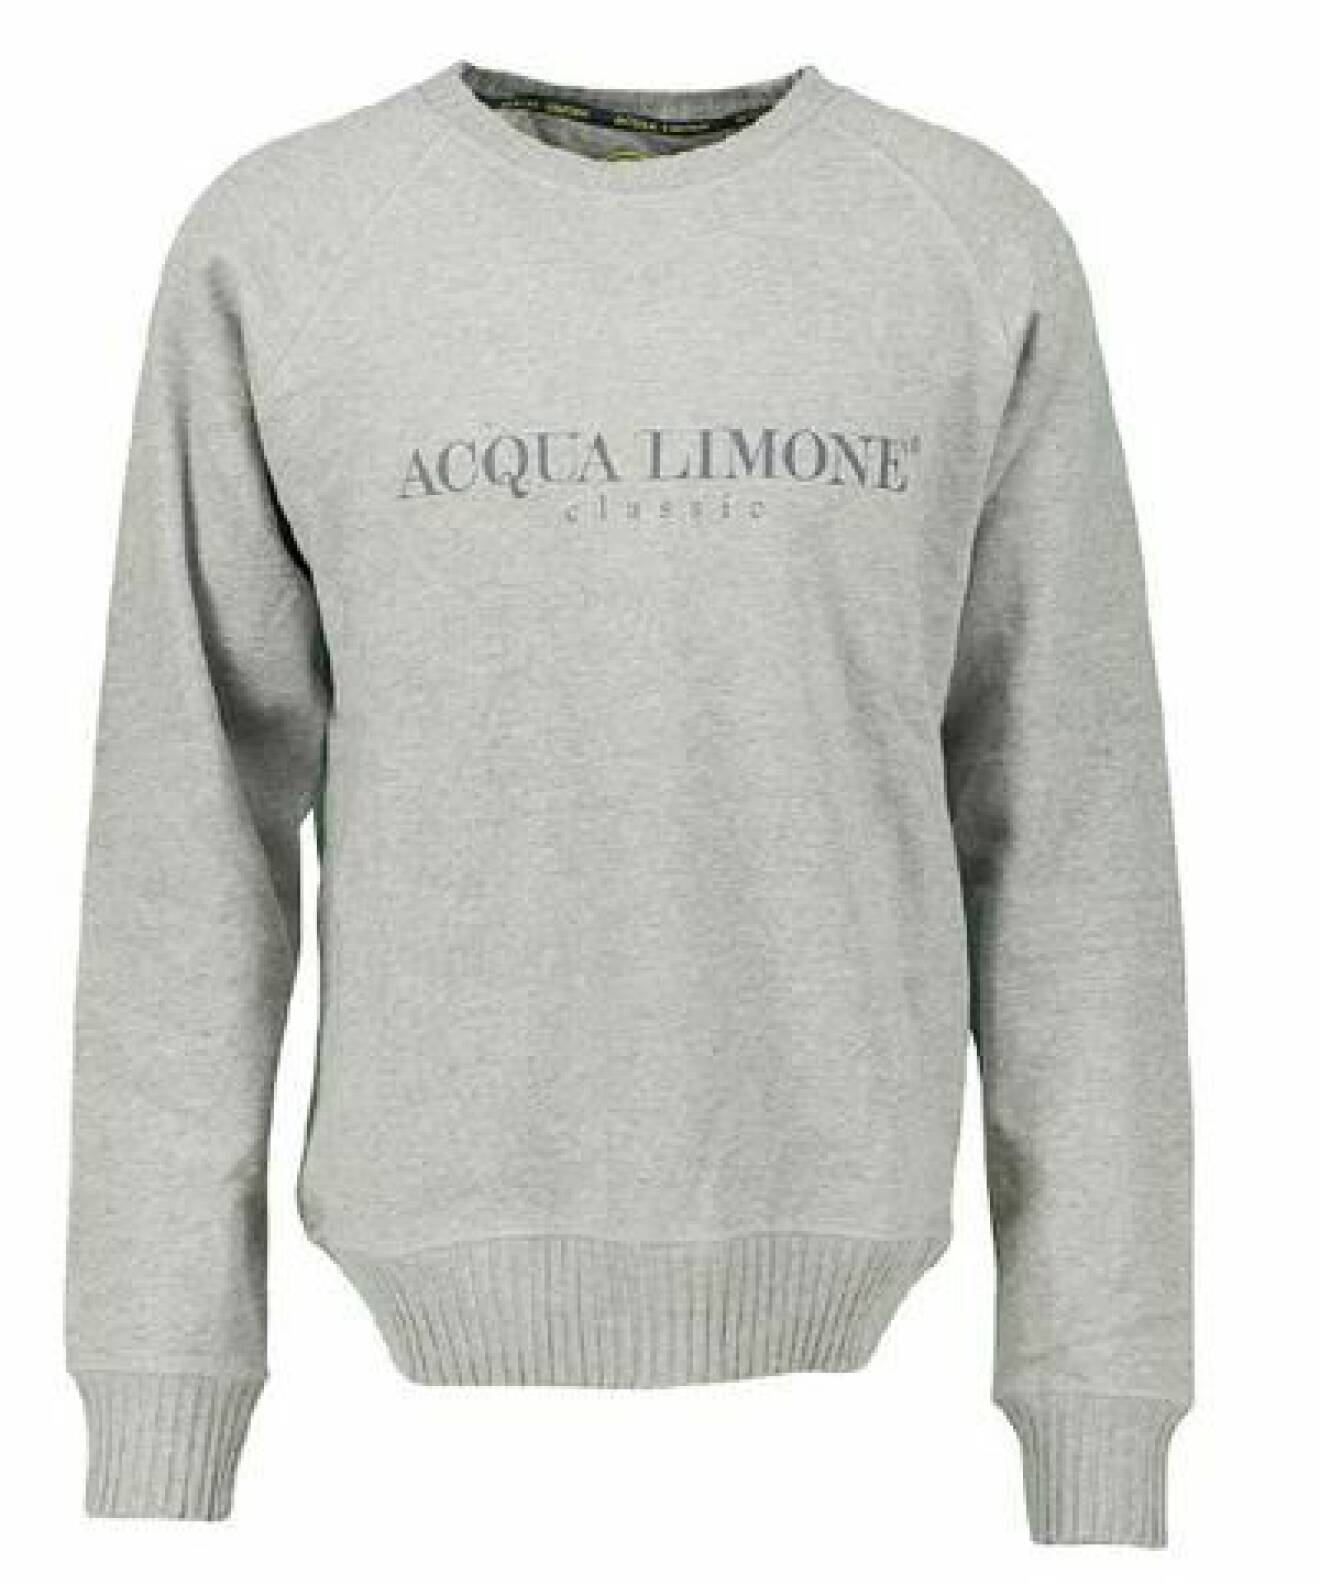 Grå sweatshirt med rundad hals och tryck på bröstet. Tröja från Aqua Limone.